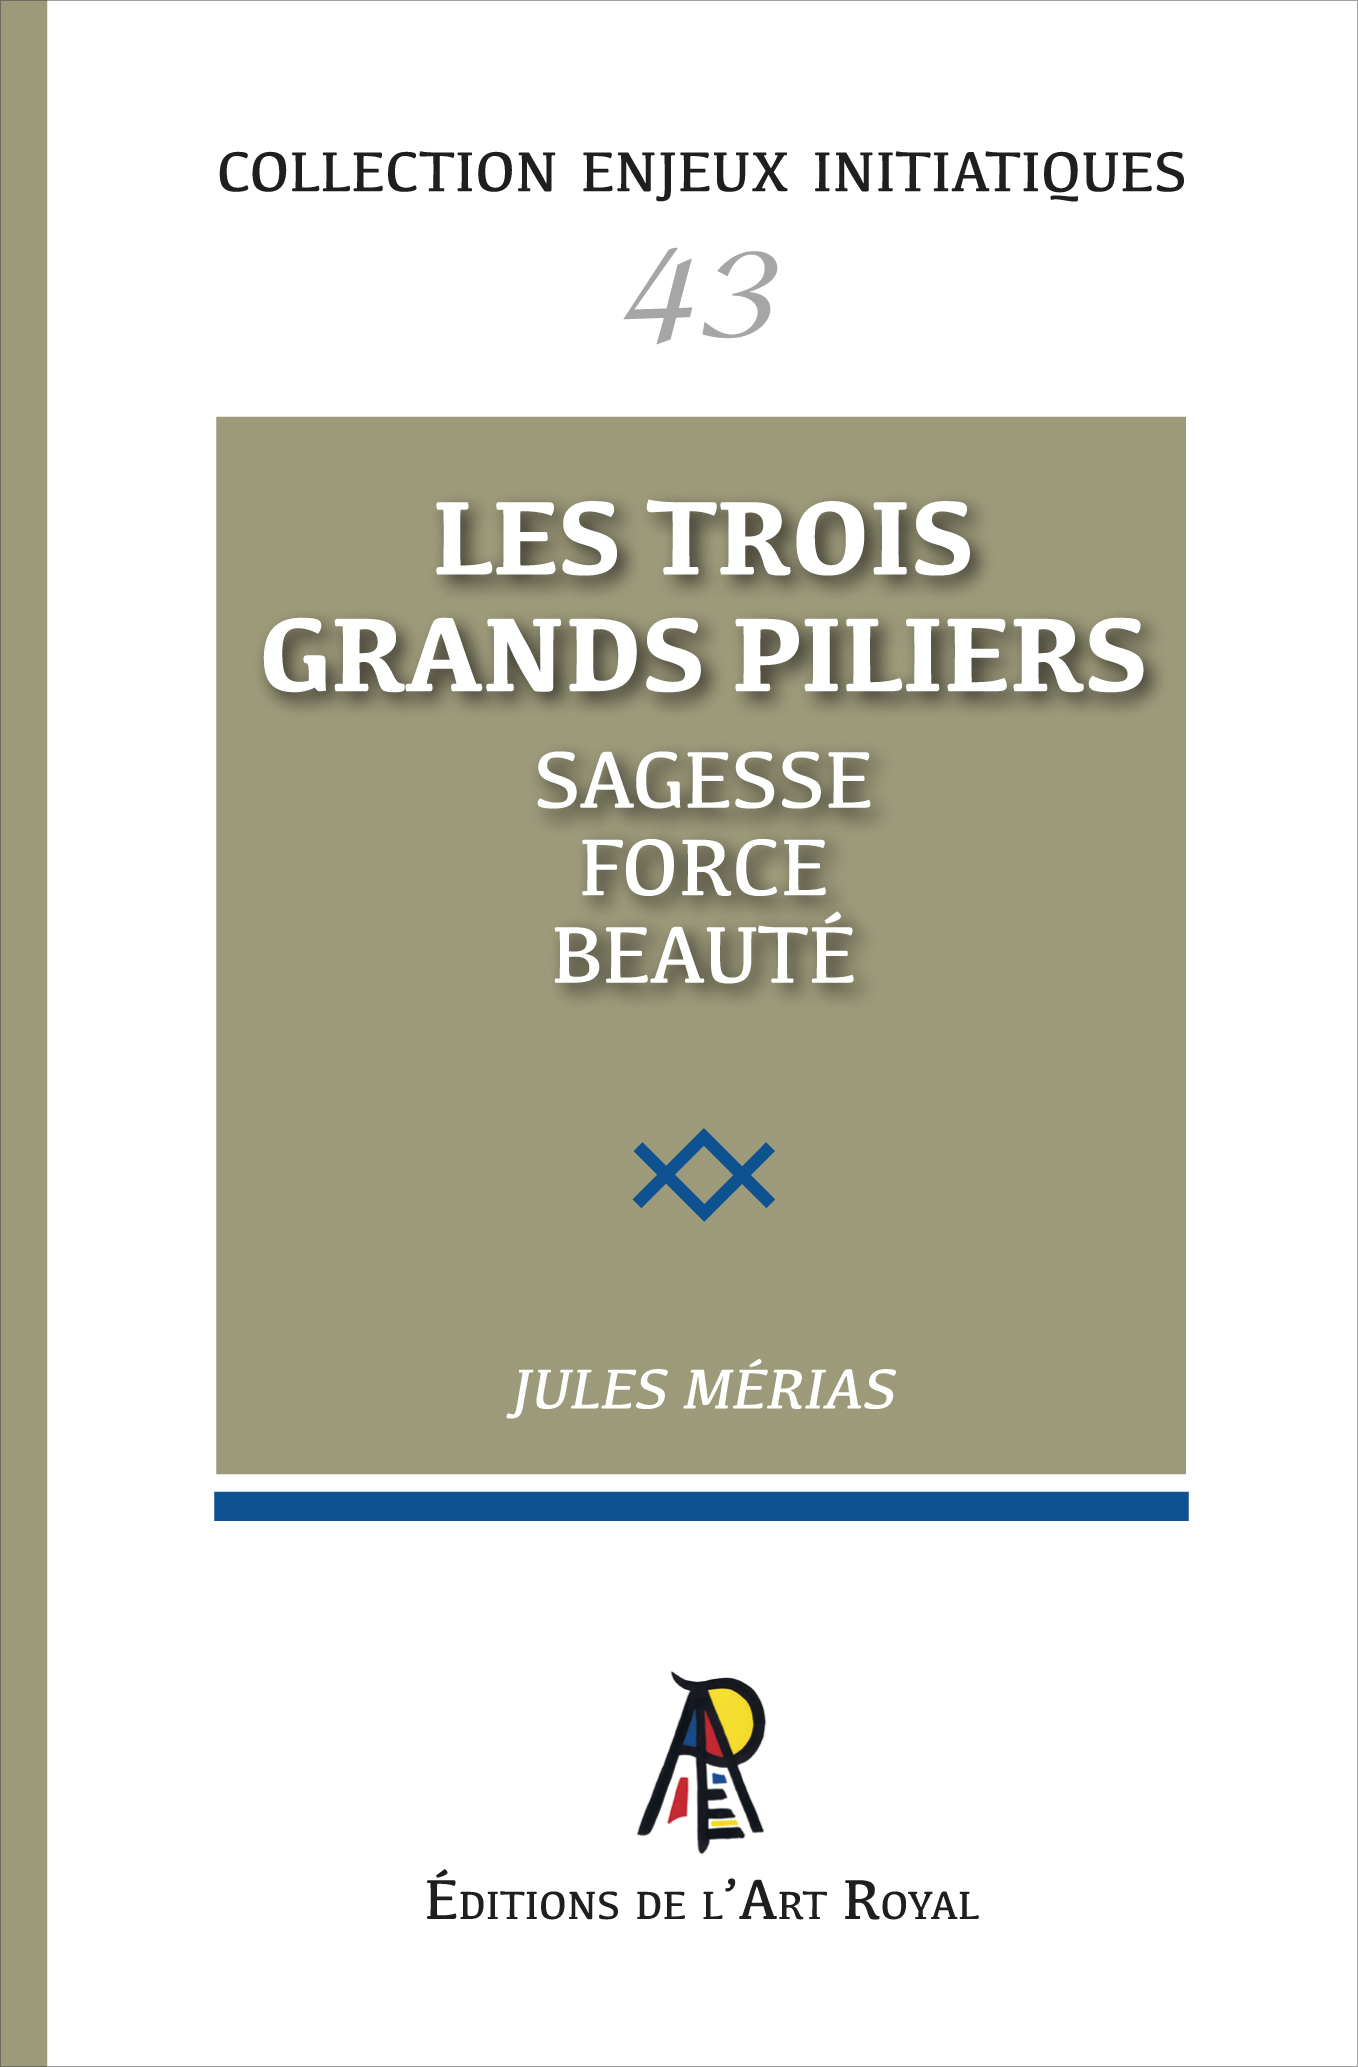 43 - Les trois grands piliers, Jules Mérias